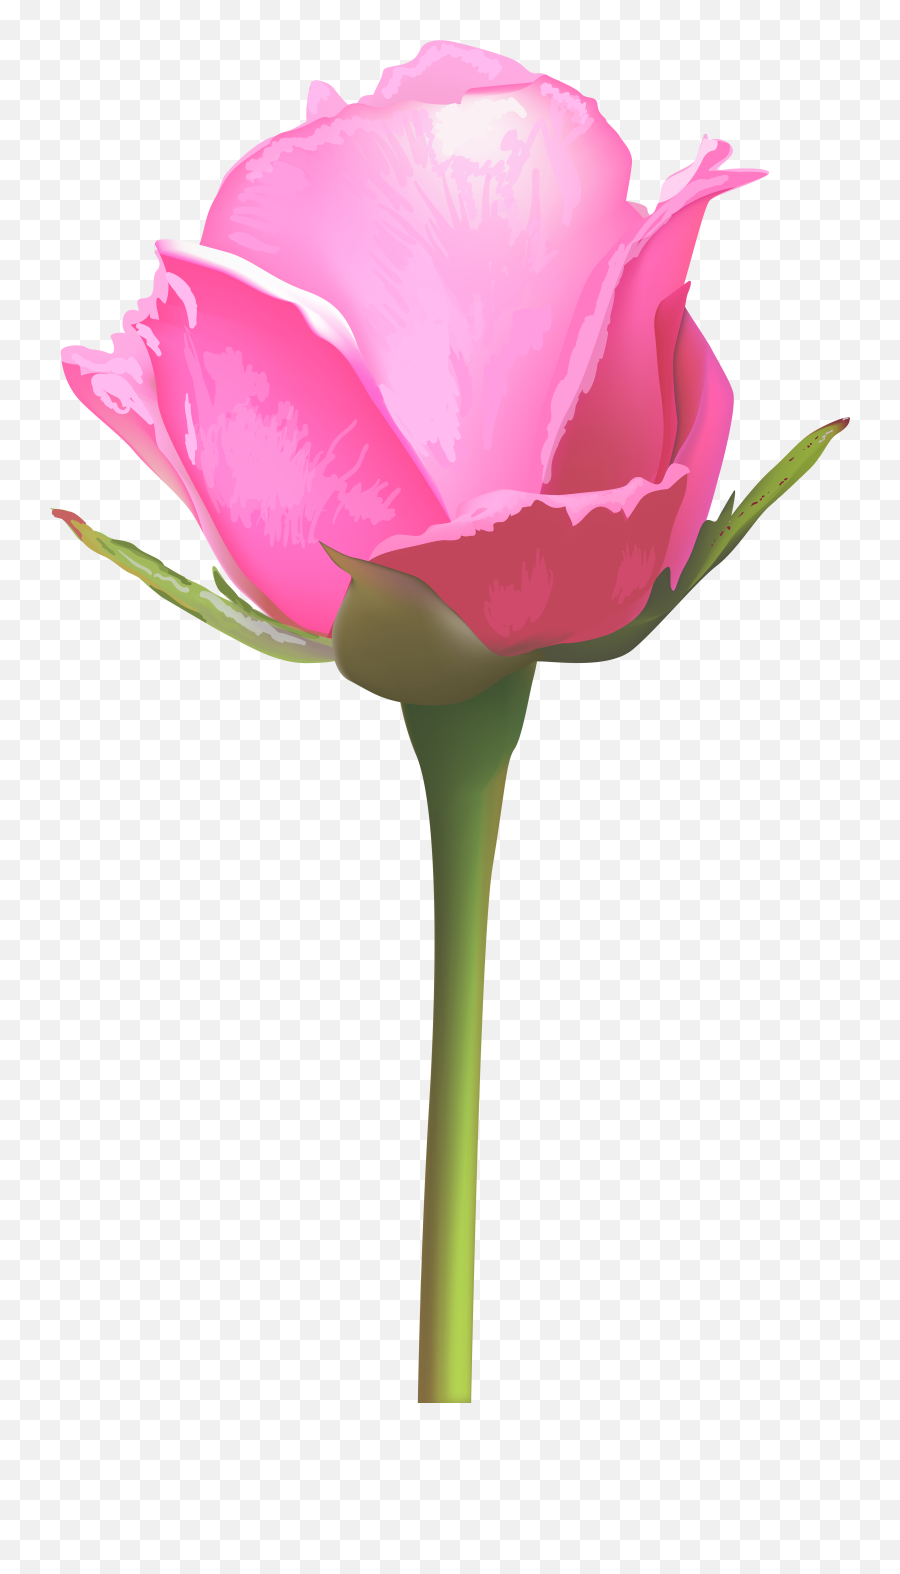 Single Pink Rose Flower Clipart - Single Pink Rose Flower Png,Pink Rose Transparent